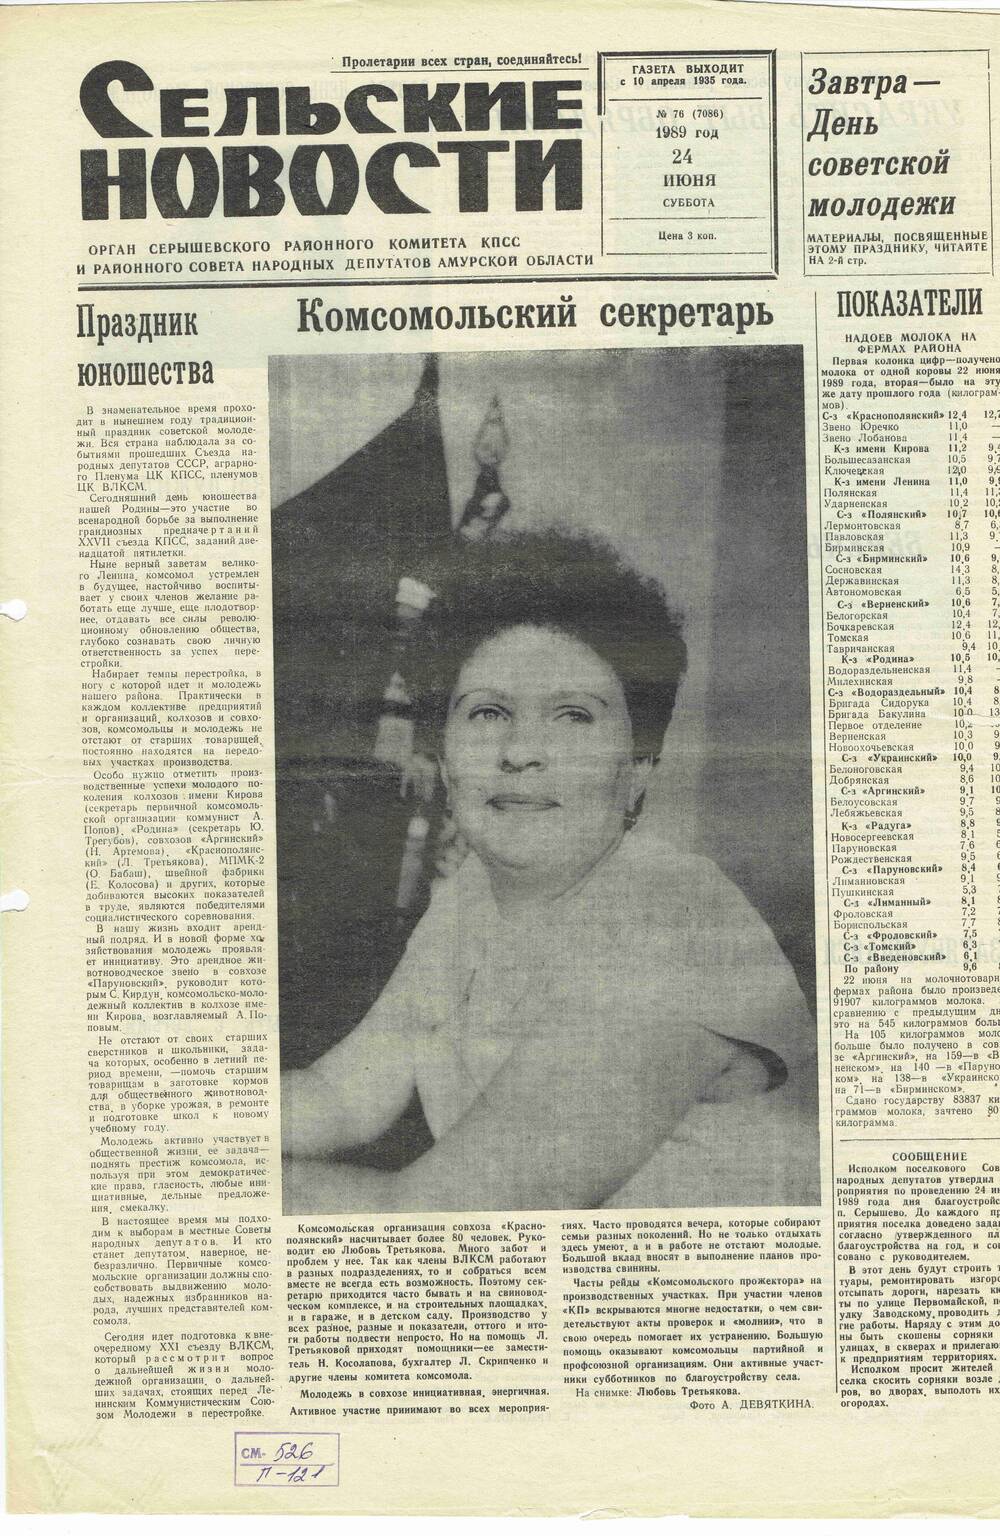 Газета «Сельские новости» №76 24.06.1989 года выпуска.